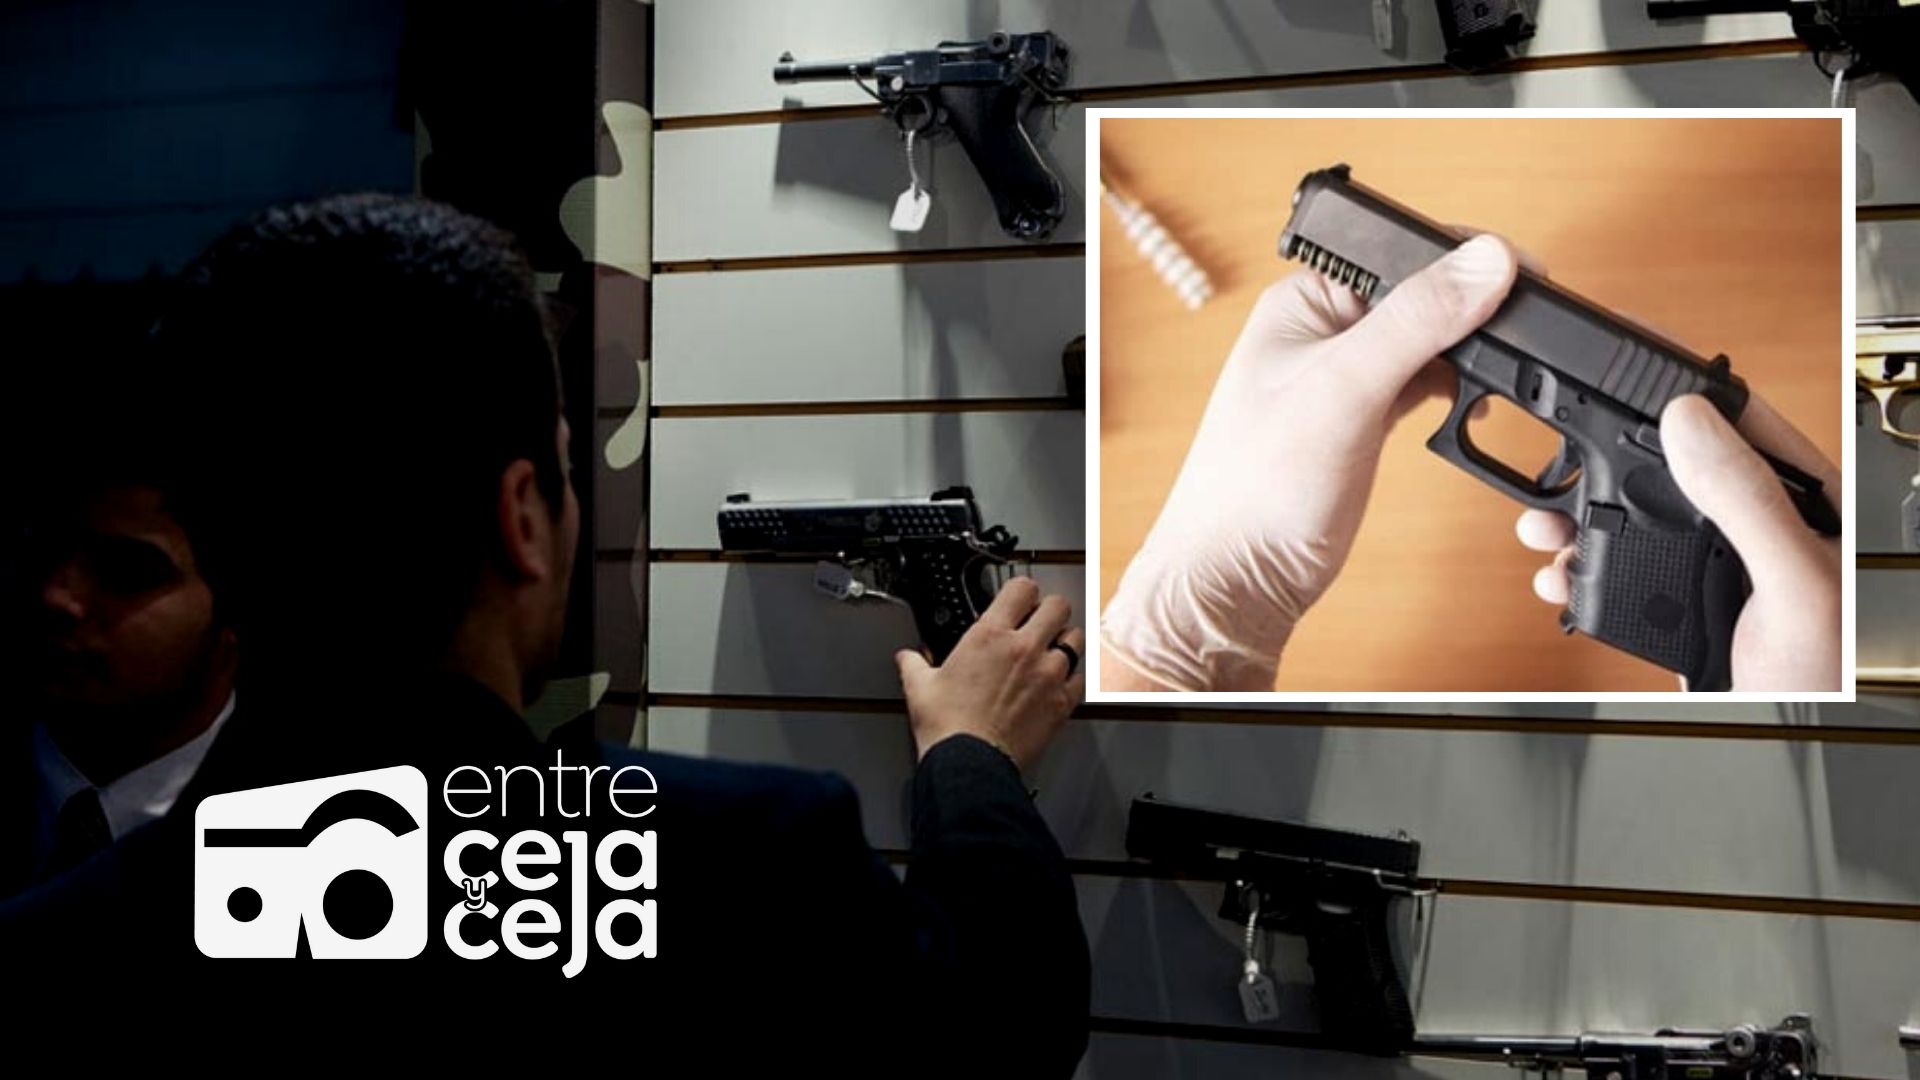 Gobierno de Colombia pone control sobre venta y porte de armas traumáticas